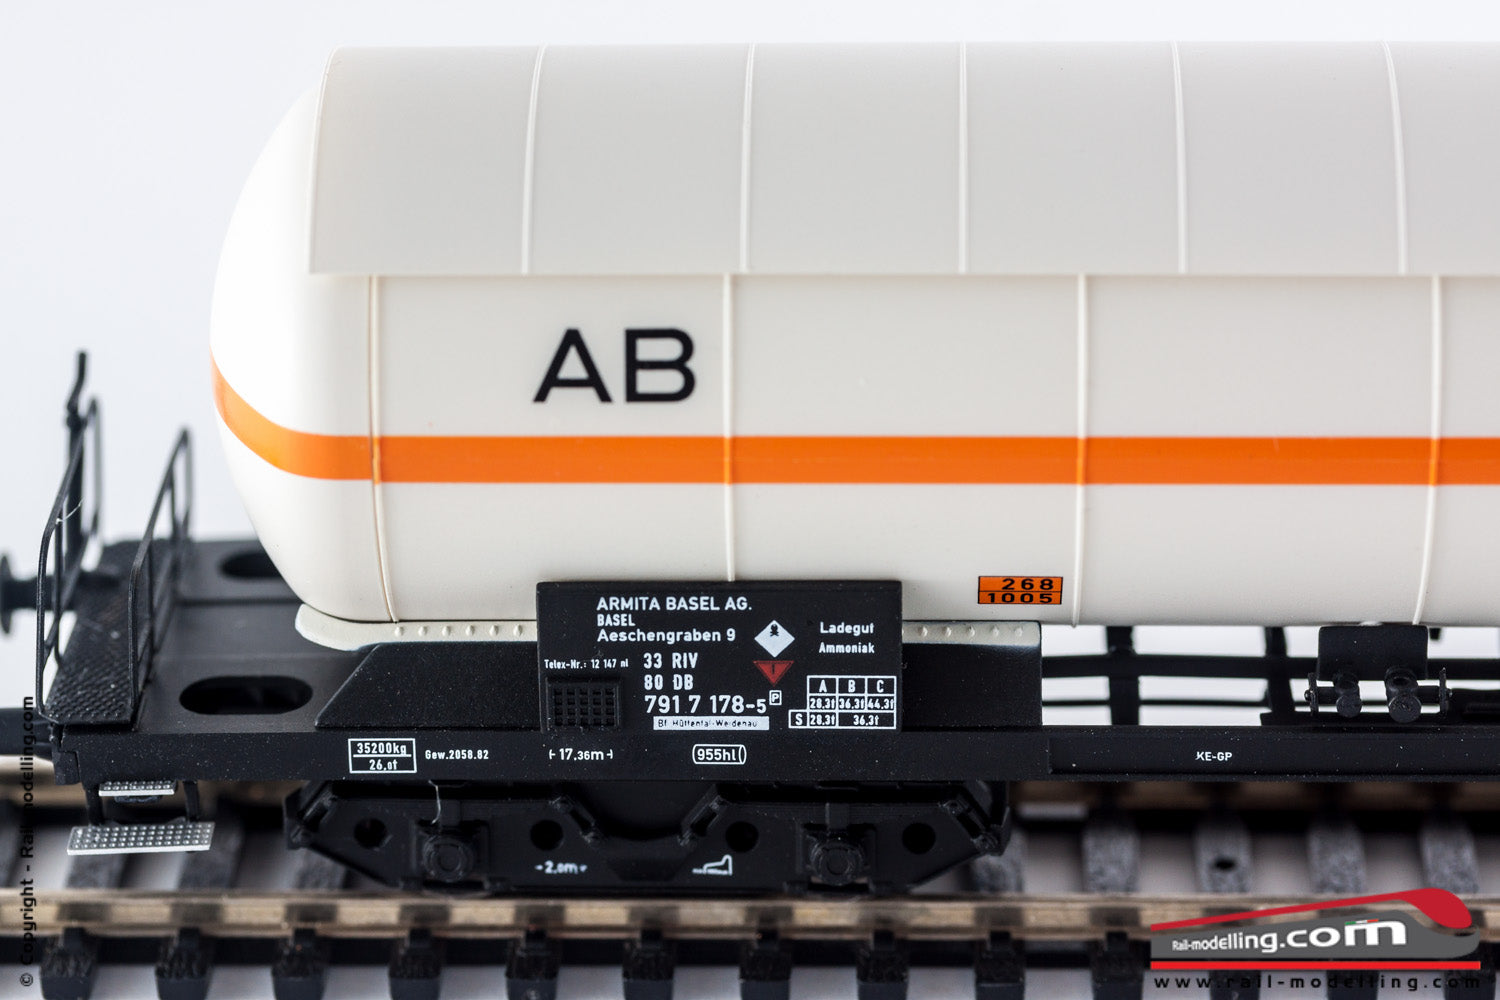 ACME 40182 - H0 1:87 - Carro merci cisterna DB Armita Basel AG Ep. IV